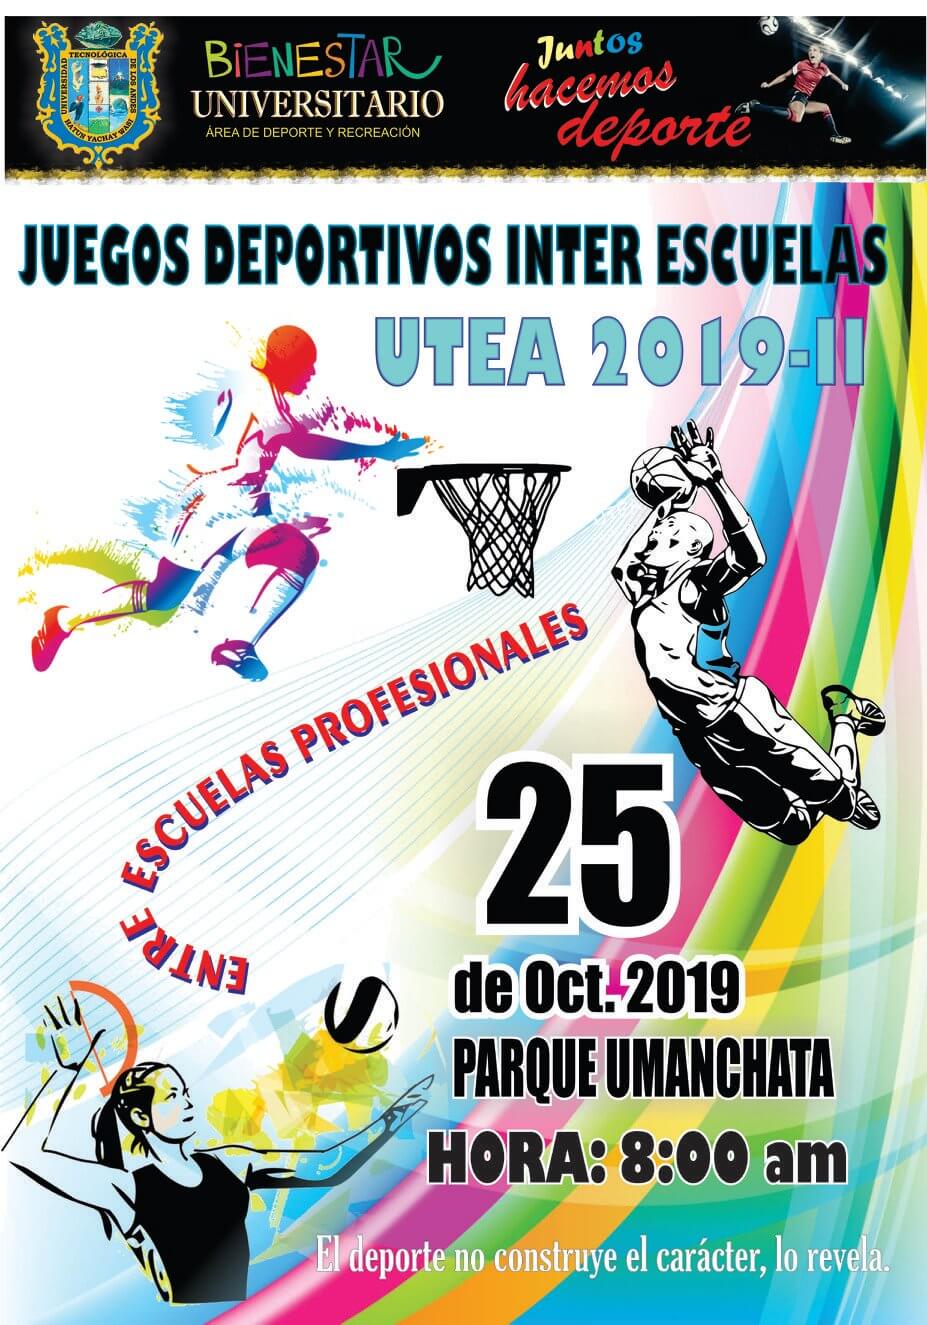 Participa en los Juegos Deportivos Inter Escuelas Profesionales 2019-II picture pic